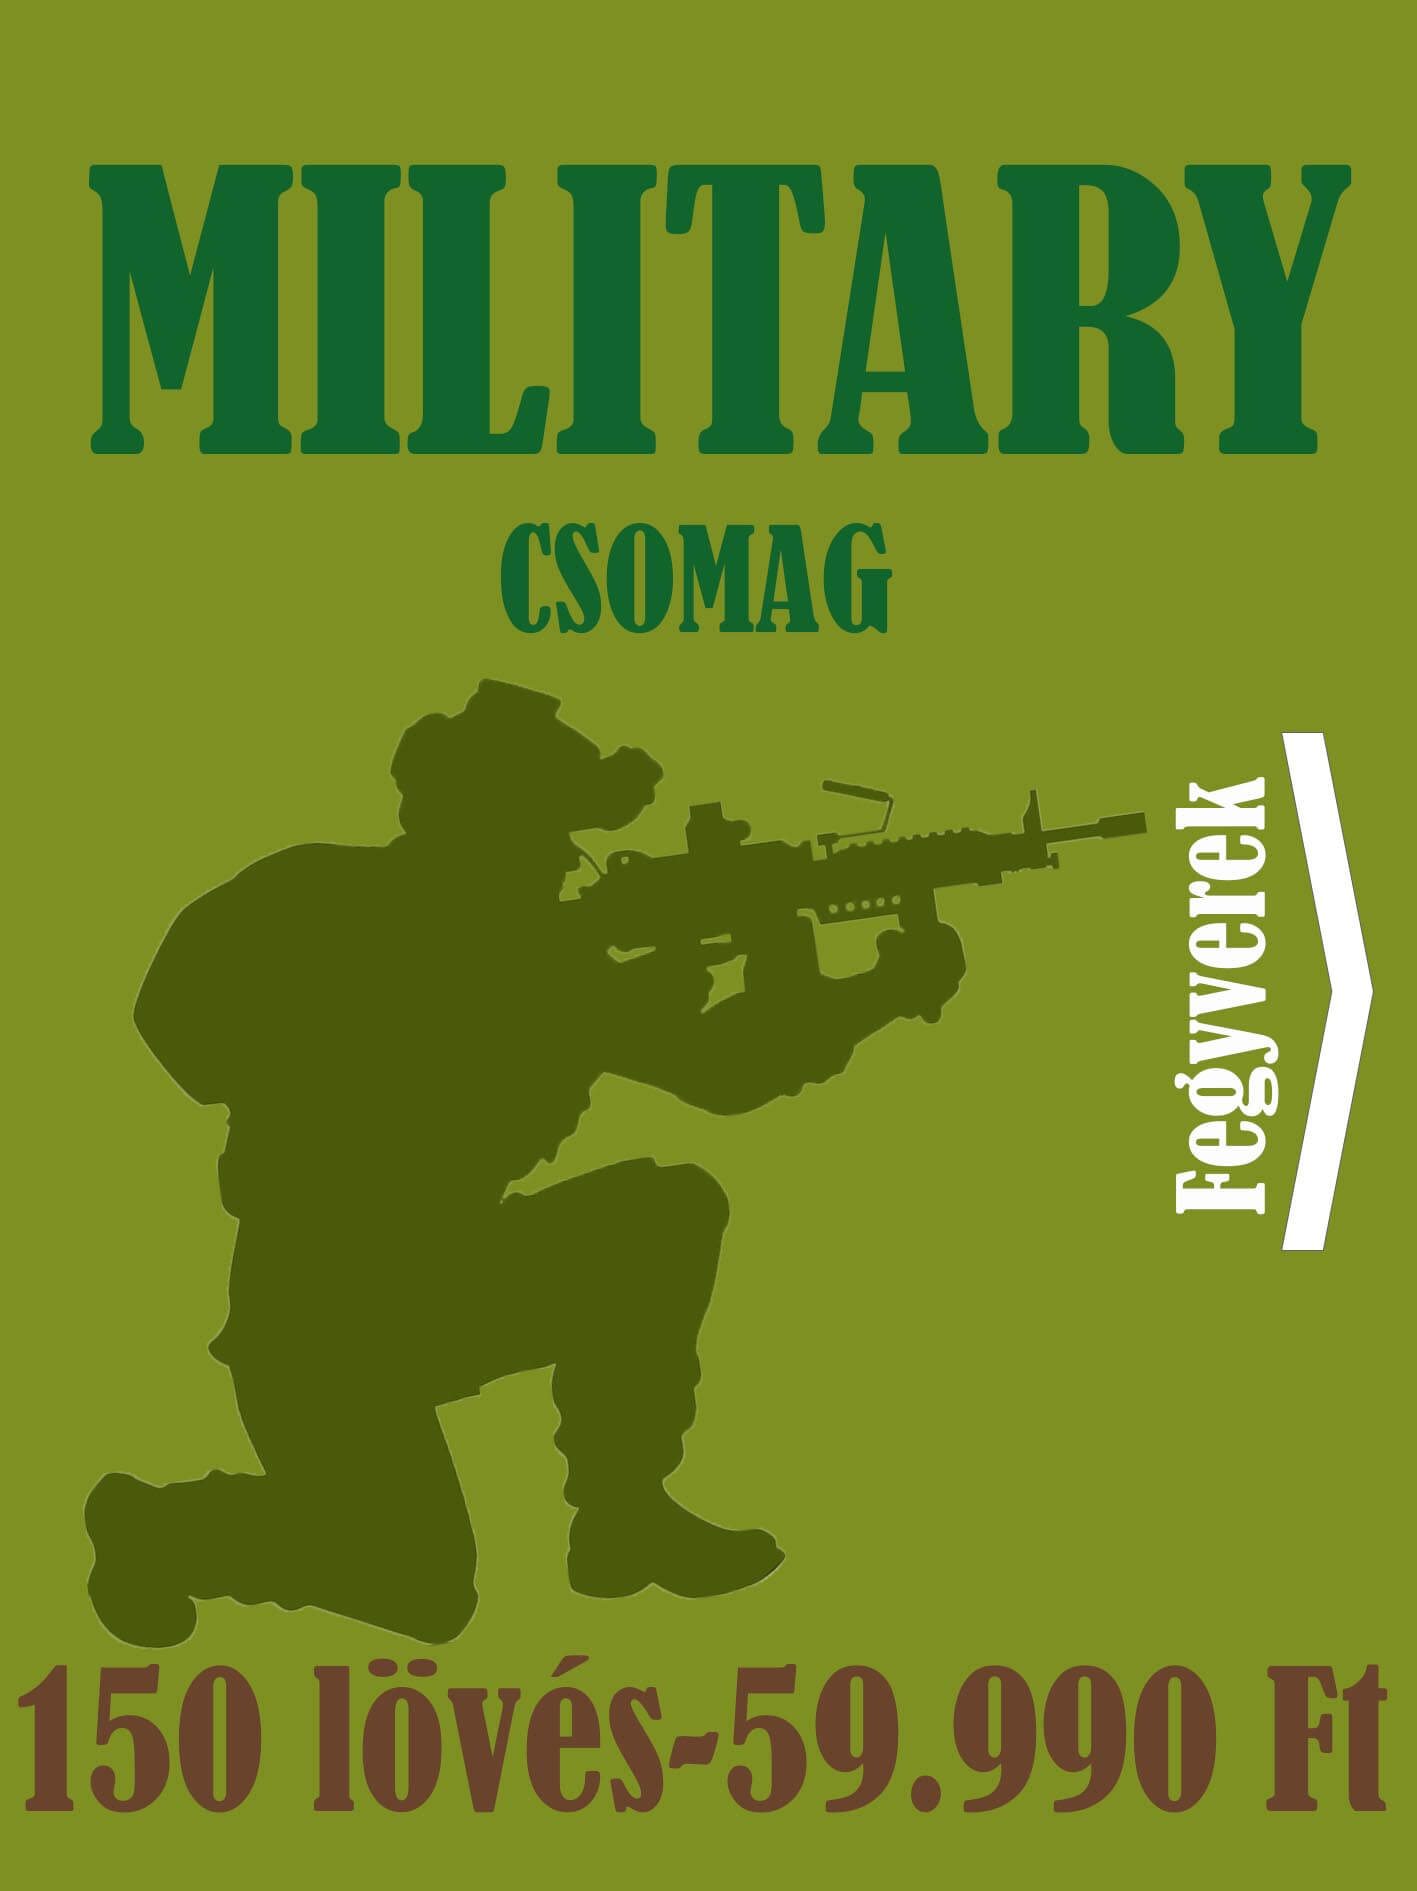 Élménylövészeti csomag - military